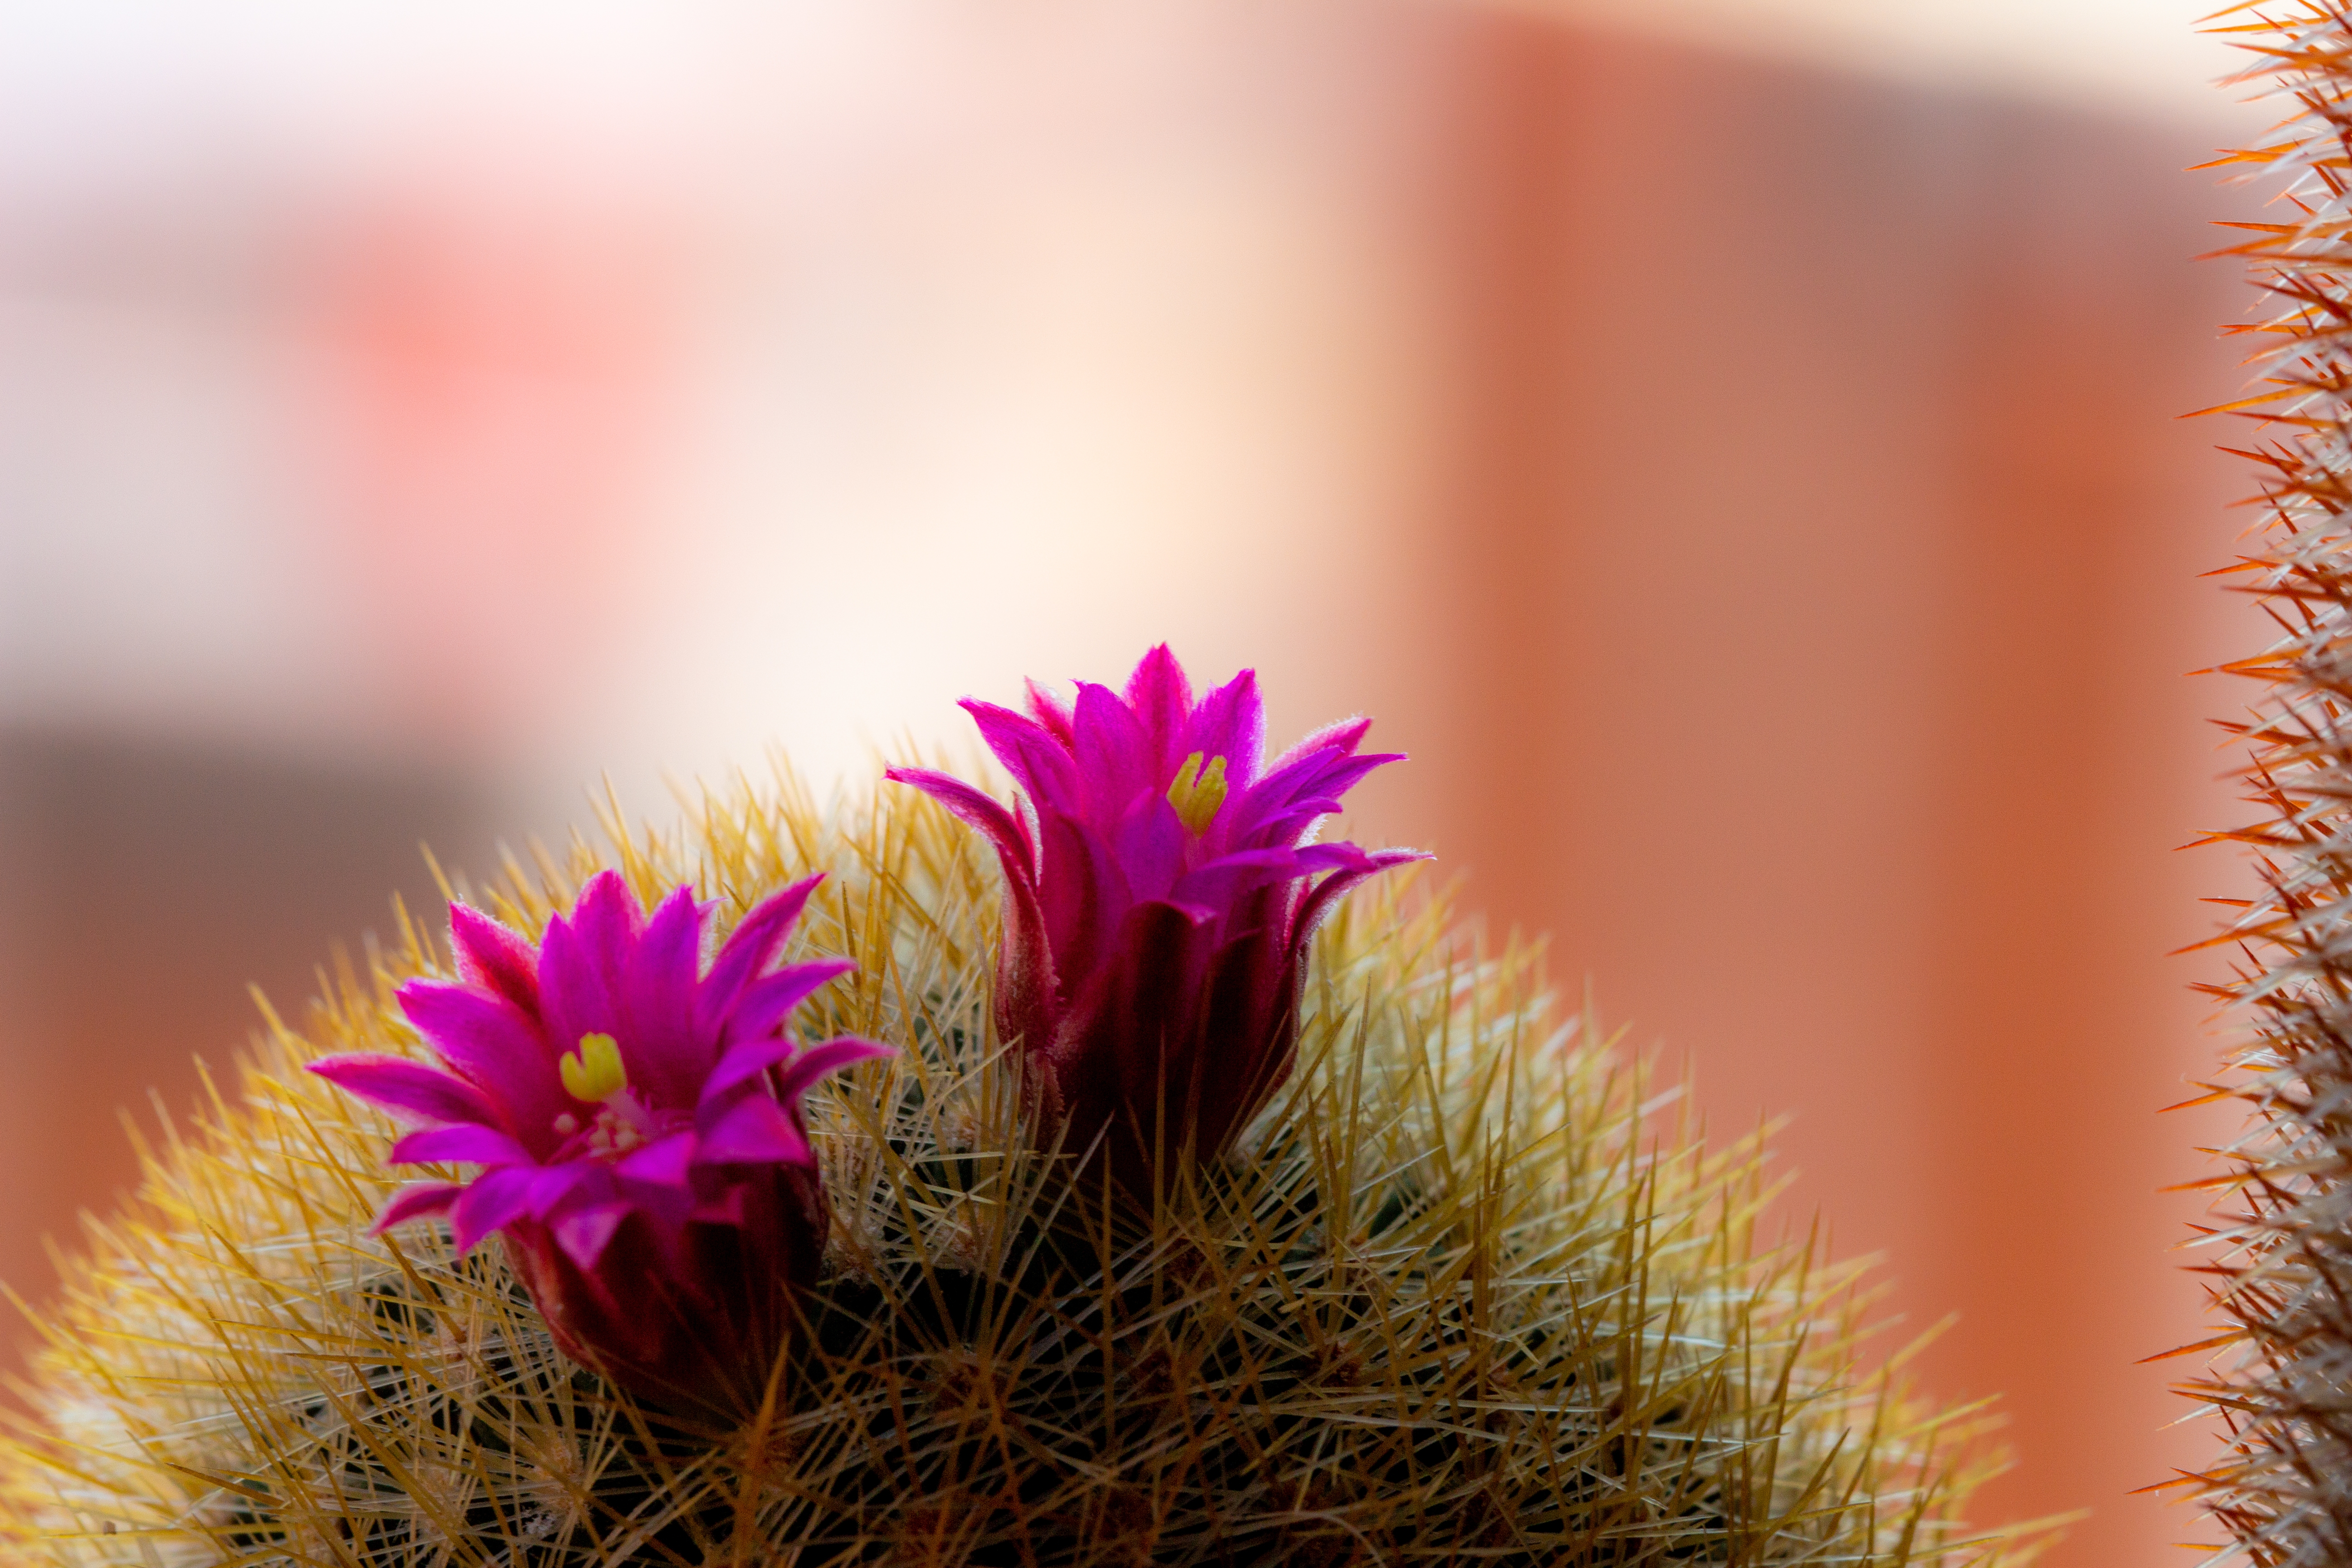 cactus in bloom #1